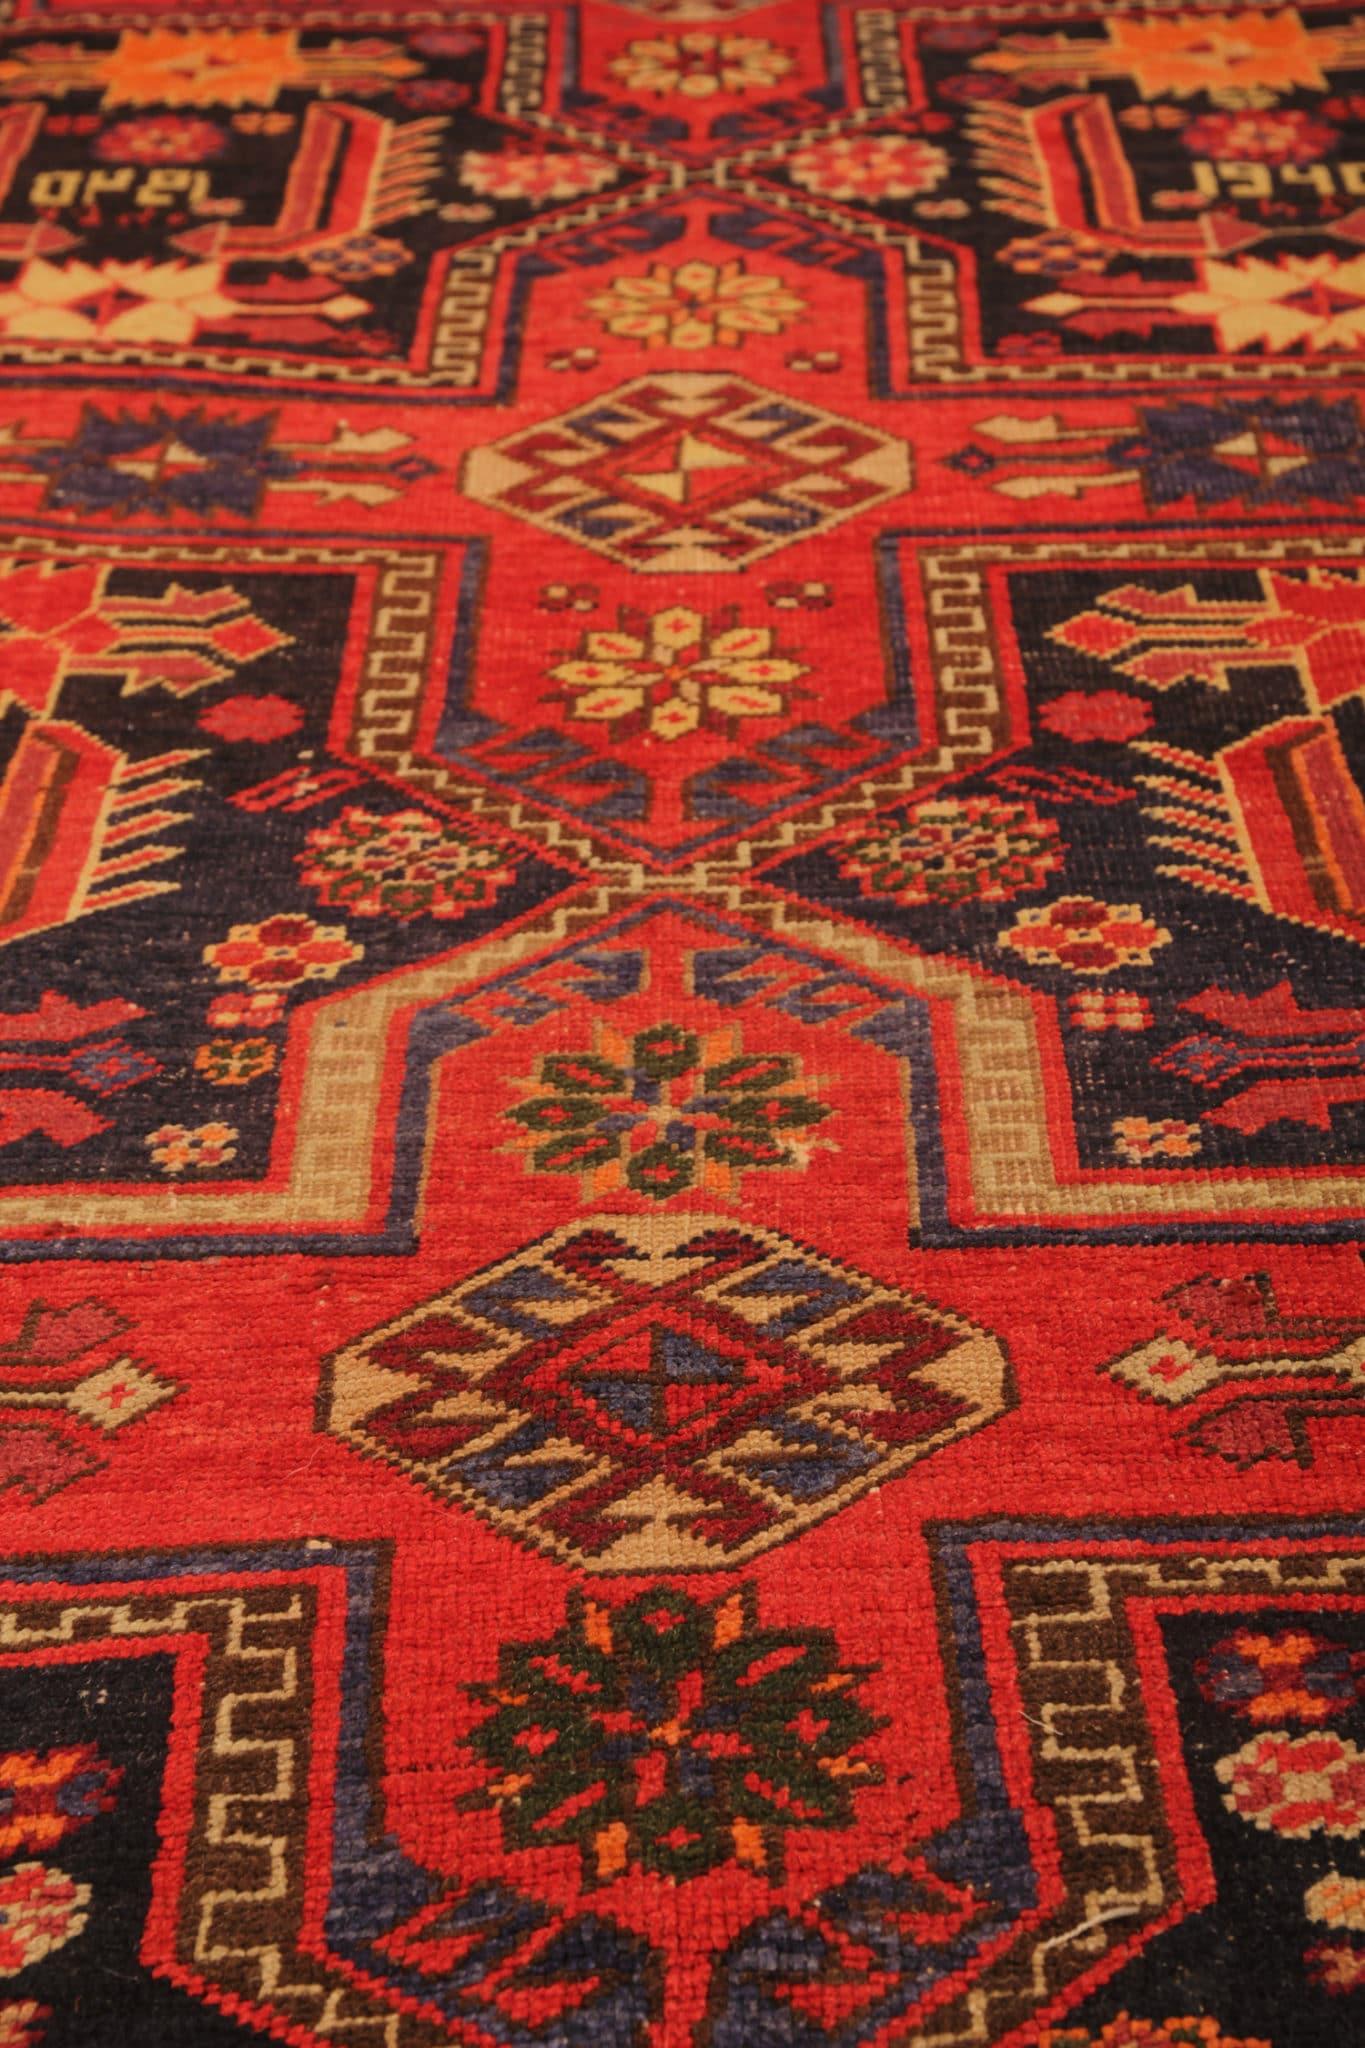 Dieser seltene antike Teppich aus dem Kazak-Gebiet ist ein wahrer Schatz für Sammler und Liebhaber gleichermaßen. In sorgfältiger Handarbeit gefertigt, ist die exquisite Handwerkskunst Ausdruck des reichen Erbes der kaukasischen Webtraditionen.